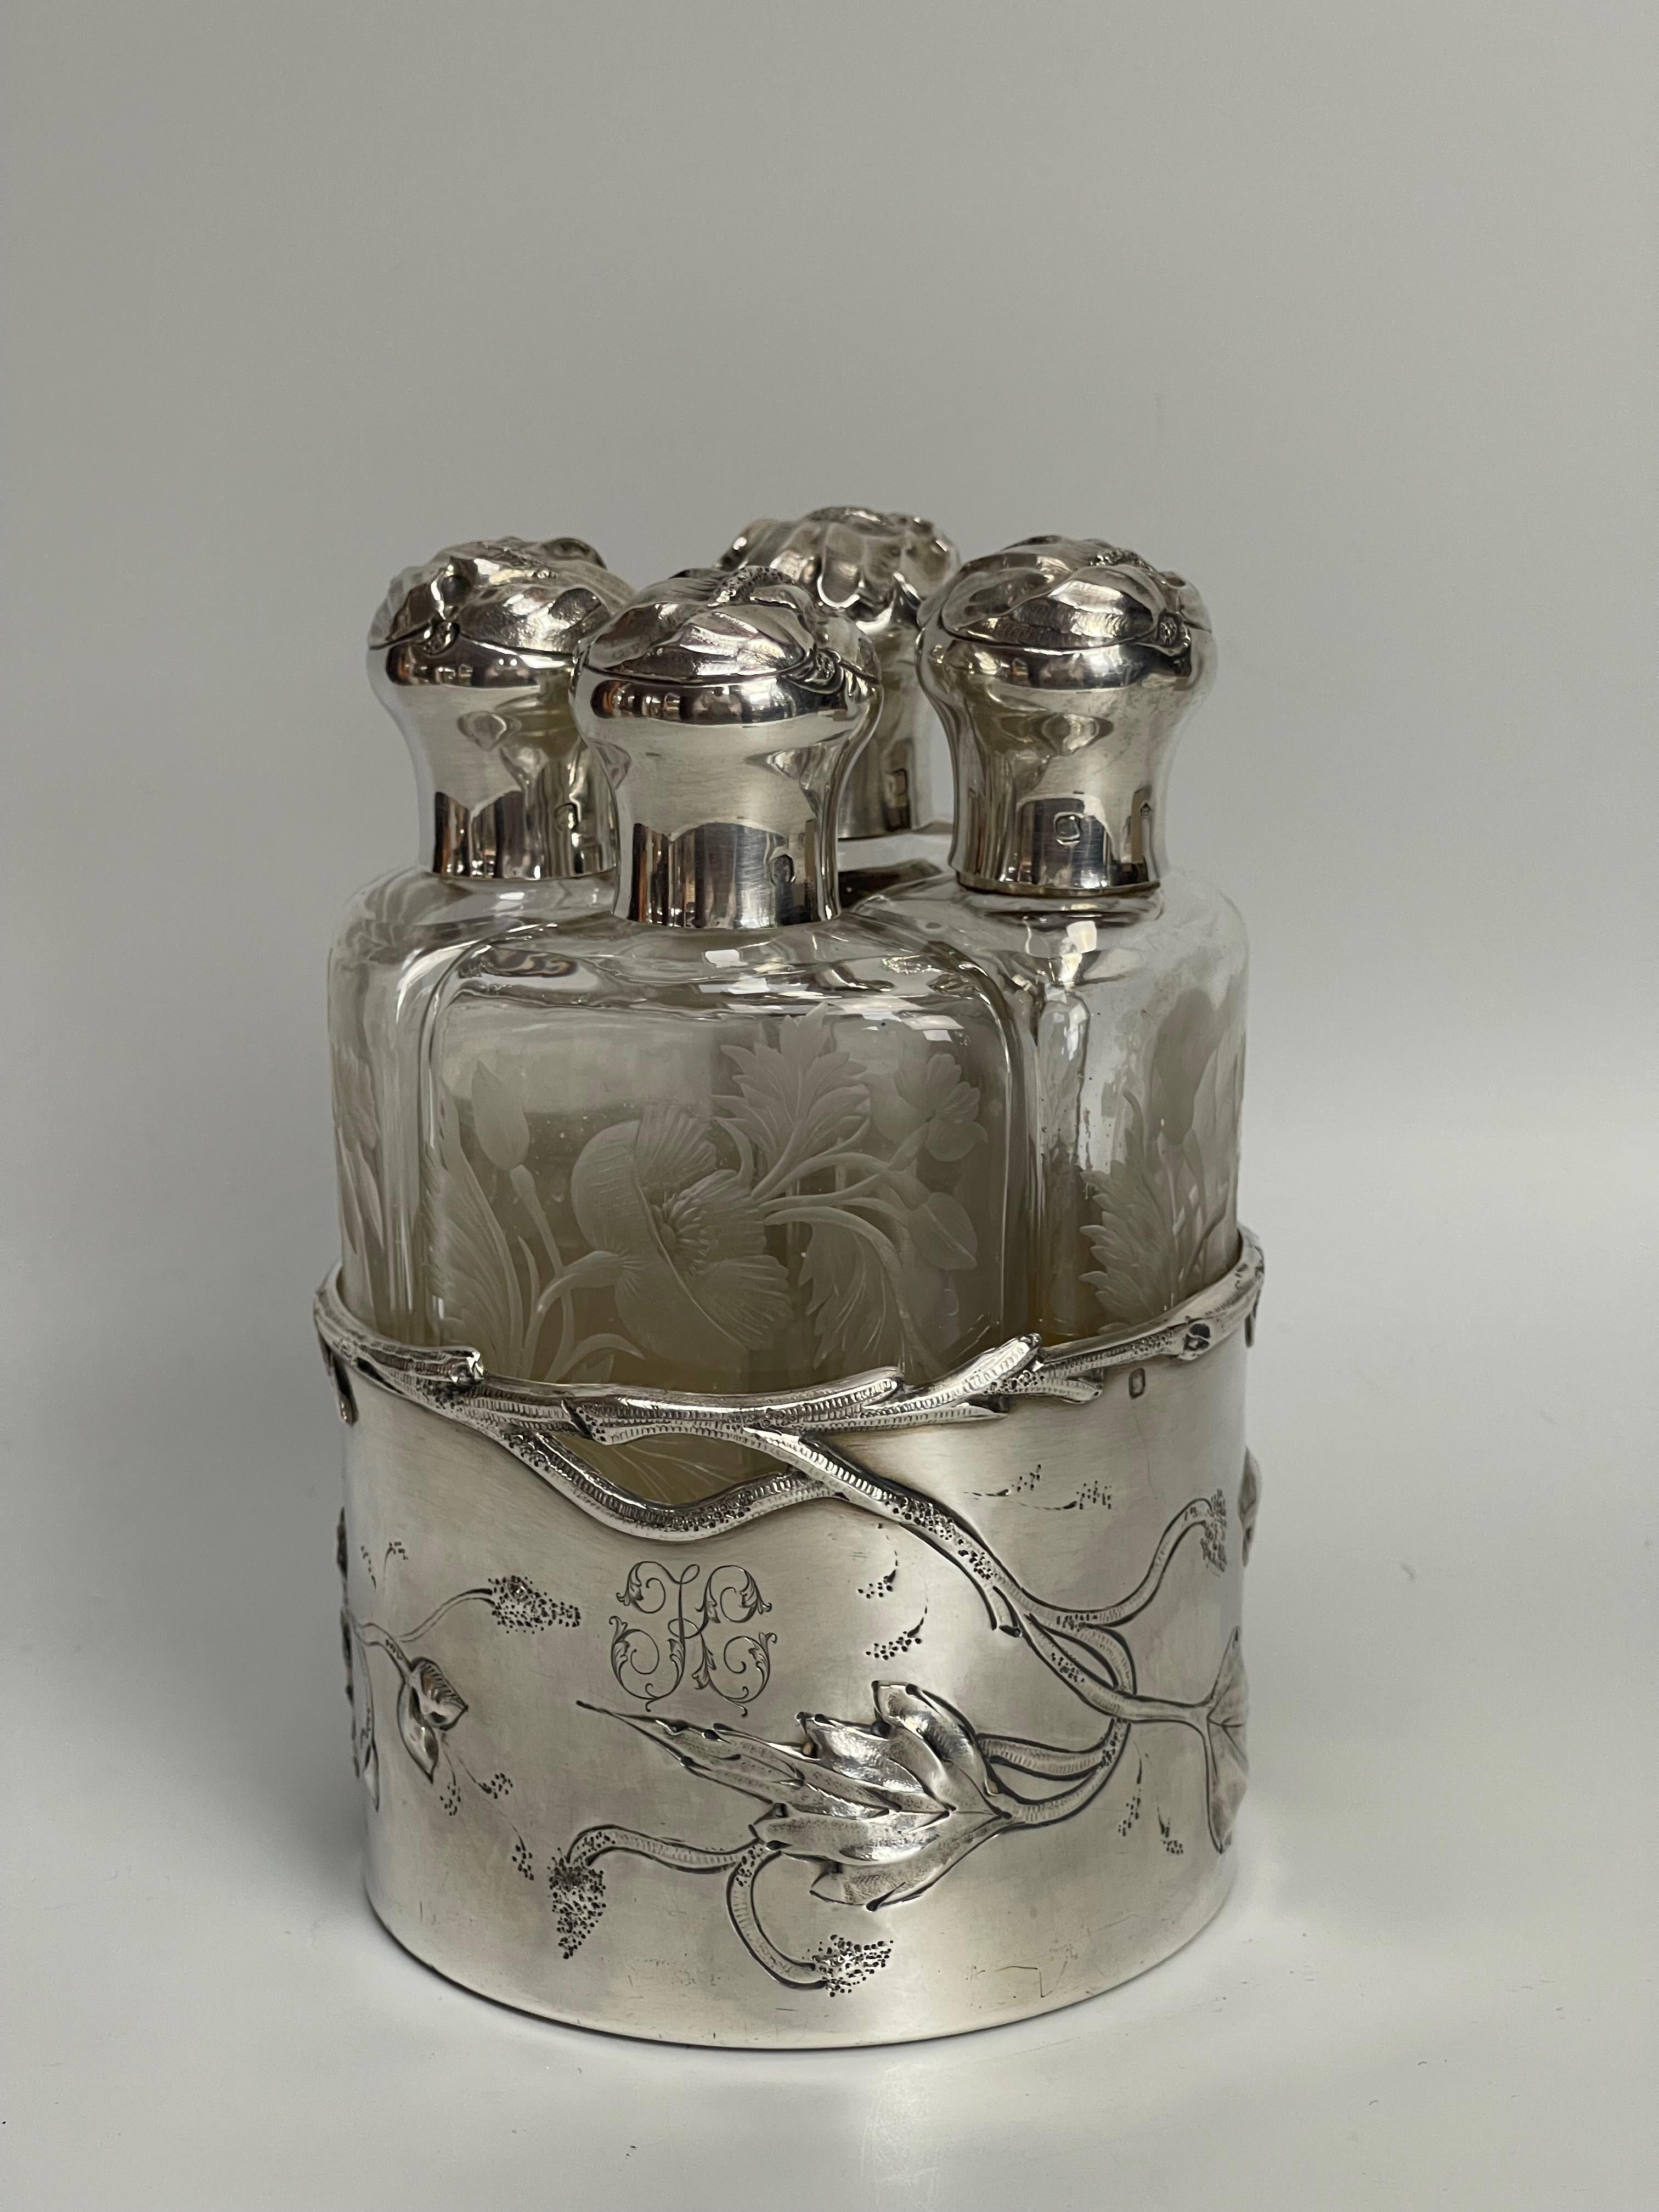 Parfümset bestehend aus 4 Flaschen mit floraler Radgravur. Rahmen und Korb aus massivem Silber mit Blumendekor und Monogramm 